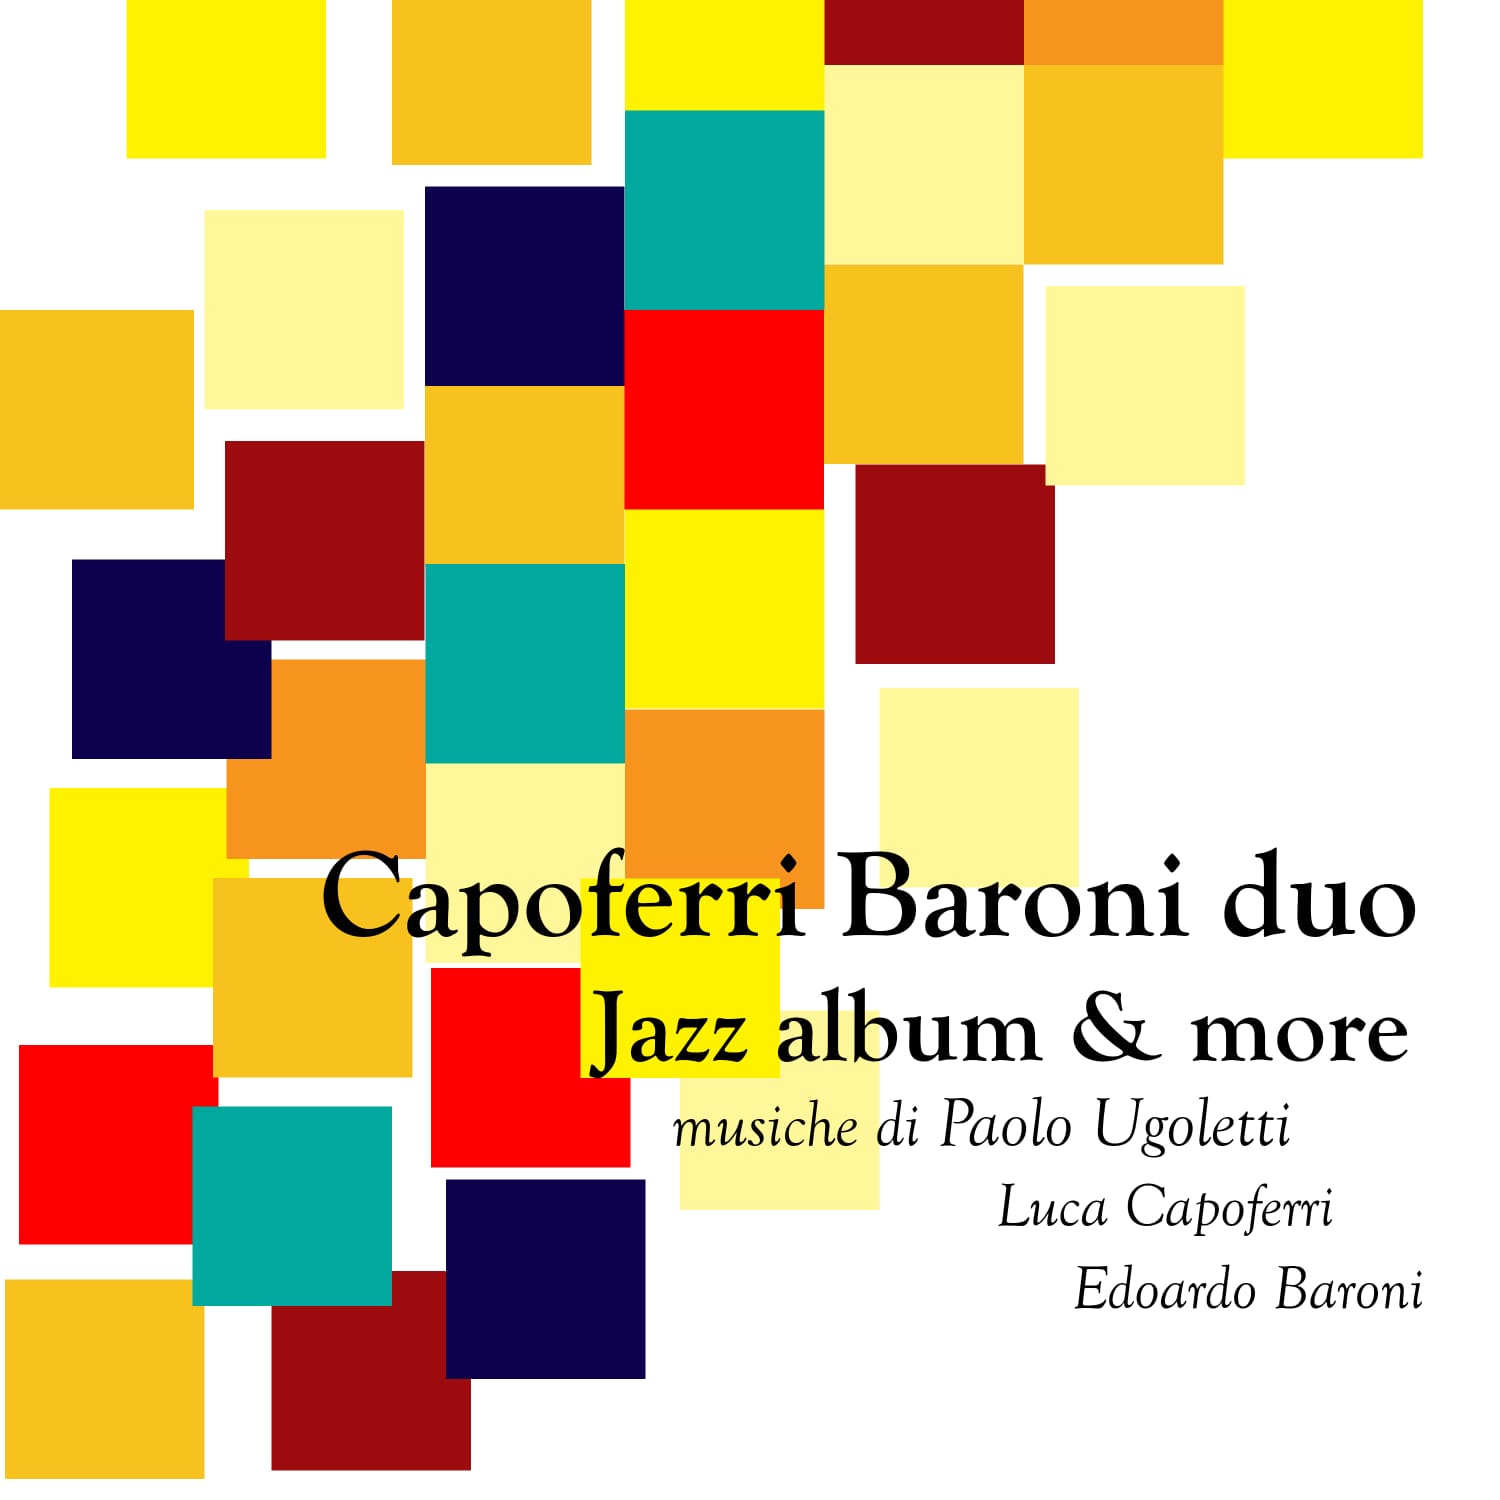 RECENSIONI. Capoferri Baroni Duo, disponibile il nuovo album “Jazz Album & More”